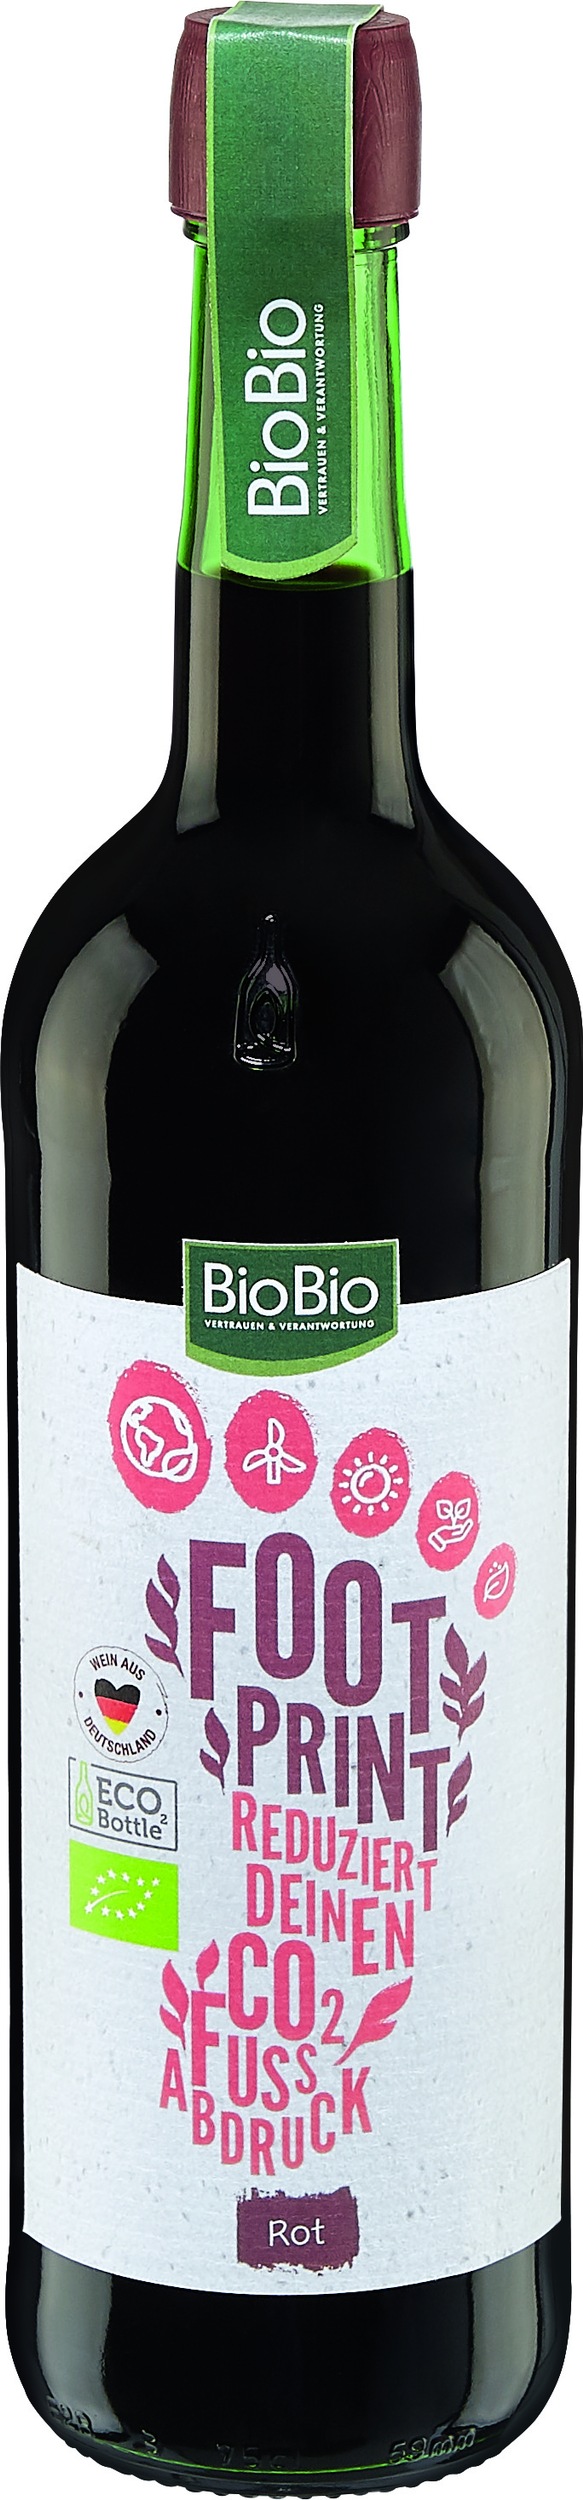 Nachhaltigerer Weingenuss: Weinauswahl in Bio-Qualität bei Netto Marken-Discount